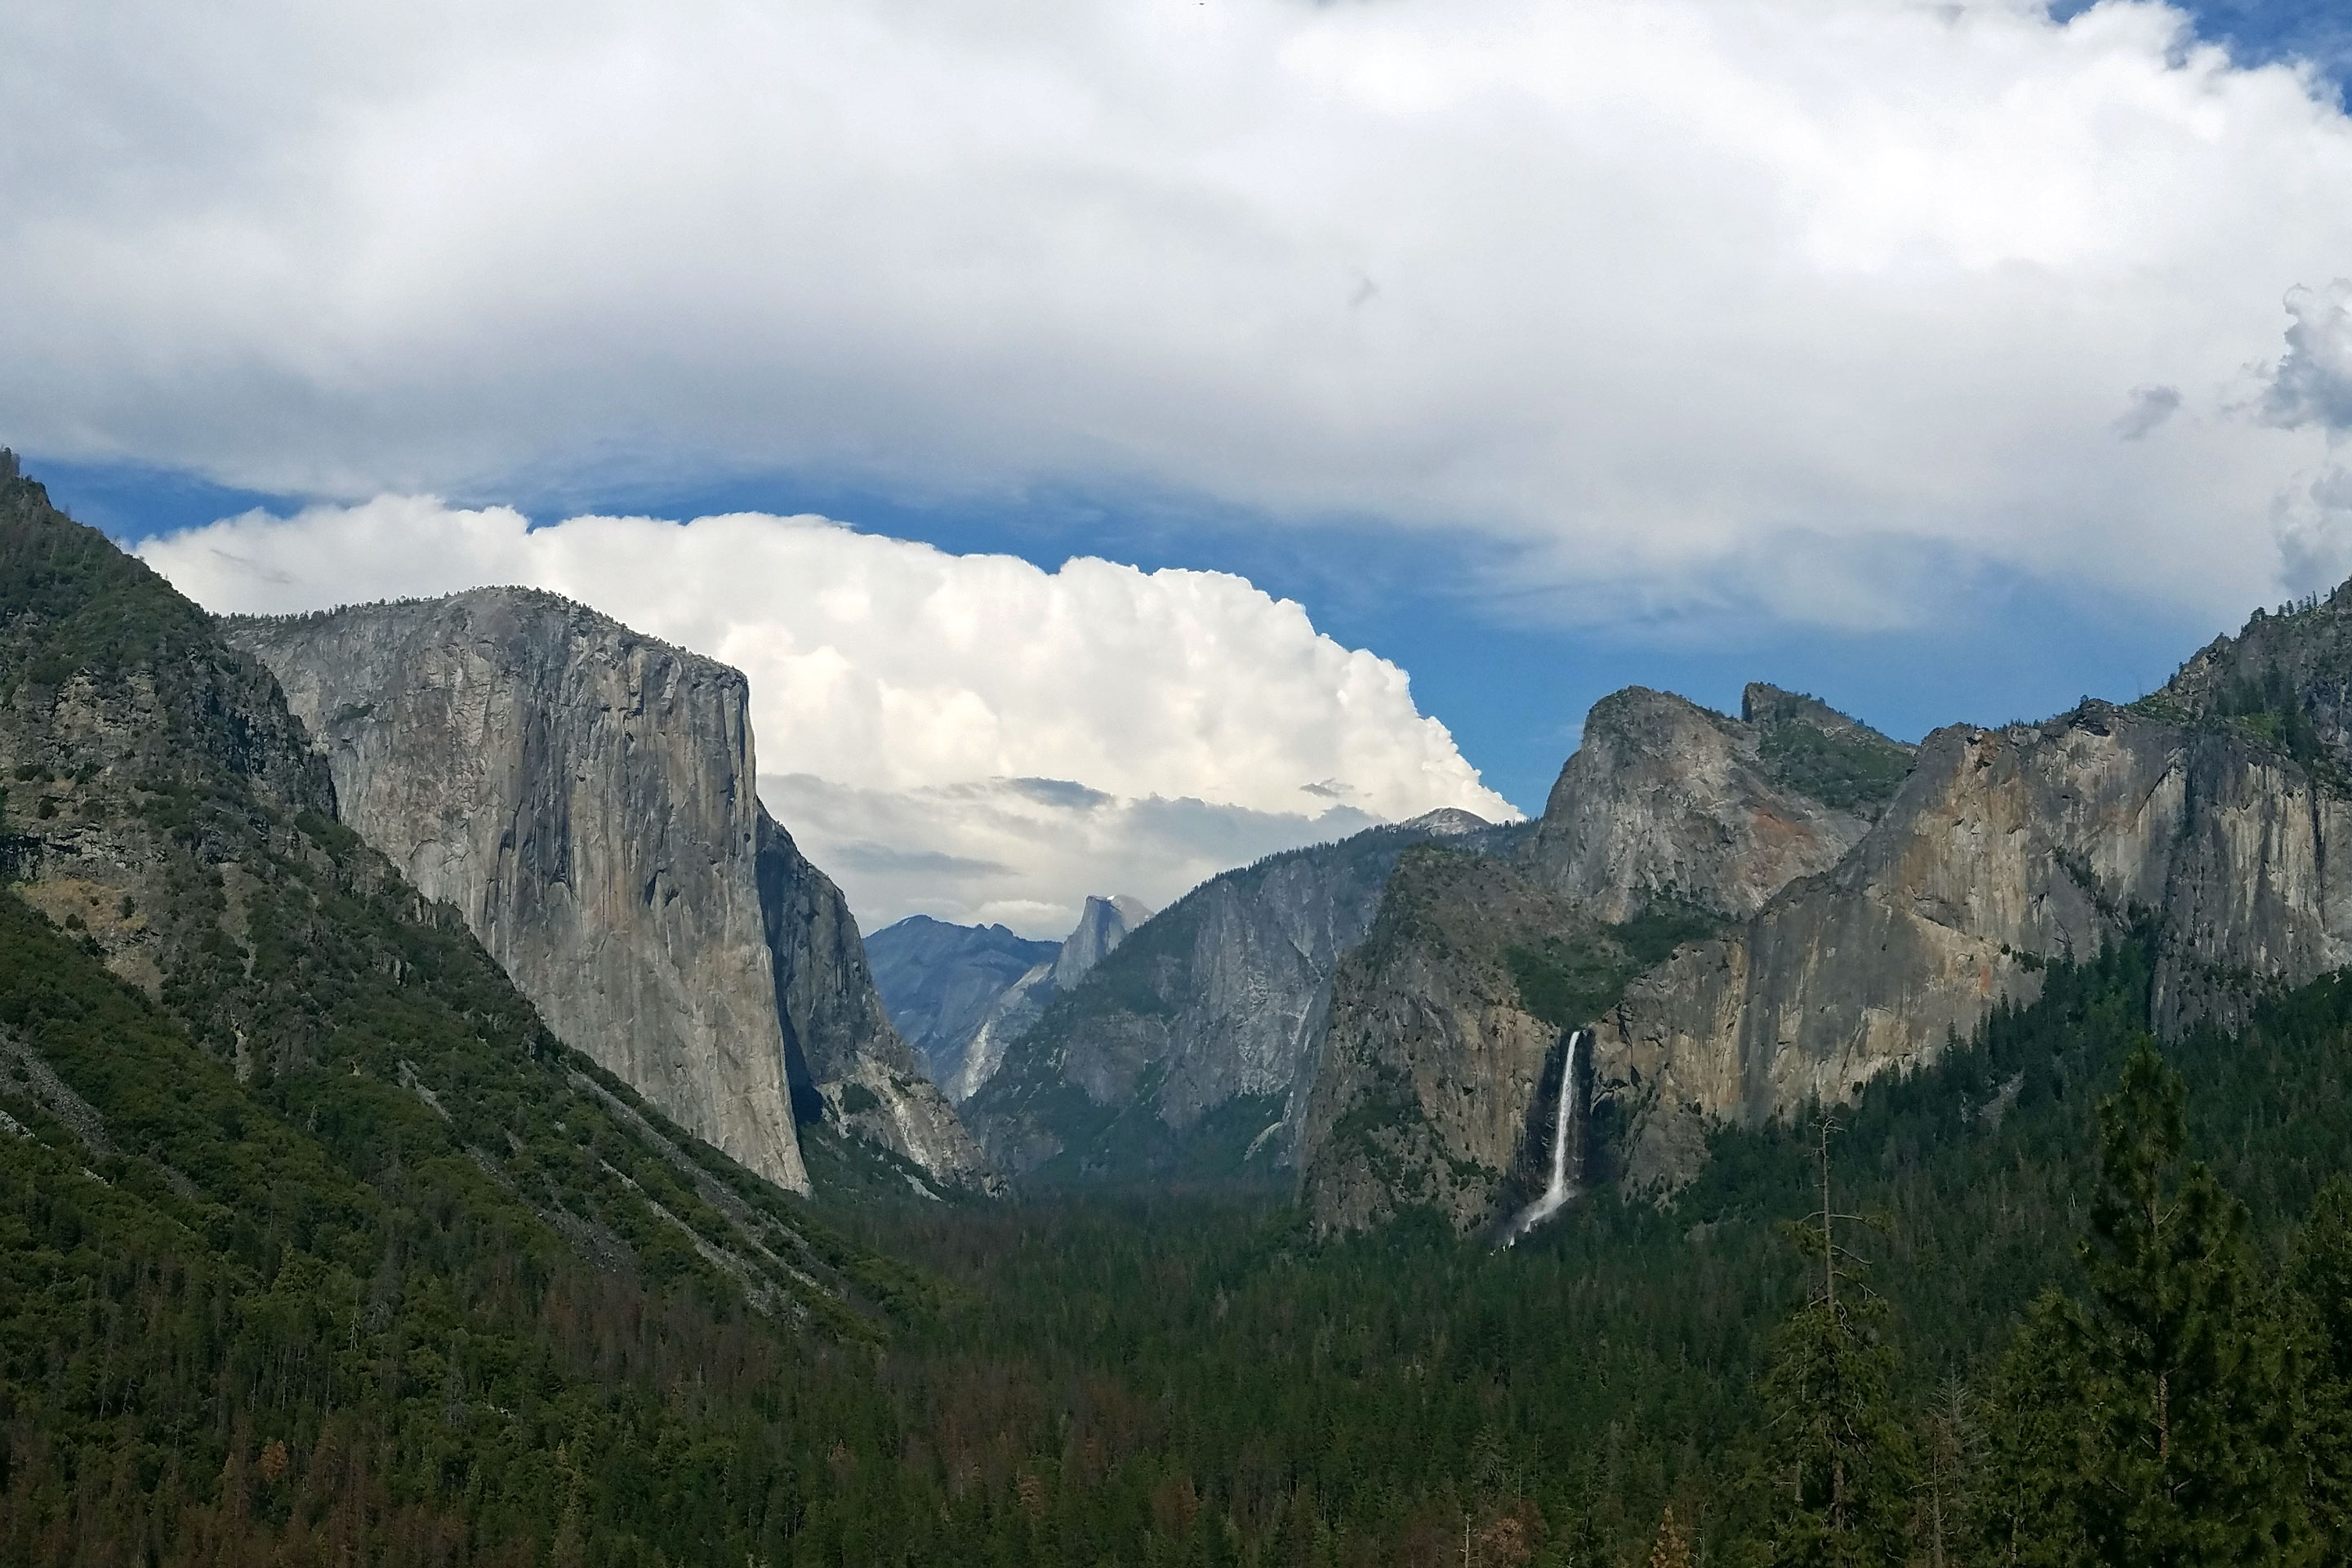 Articulatie Normalisatie woensdag Yosemite Valley - Yosemite National Park (U.S. National Park Service)